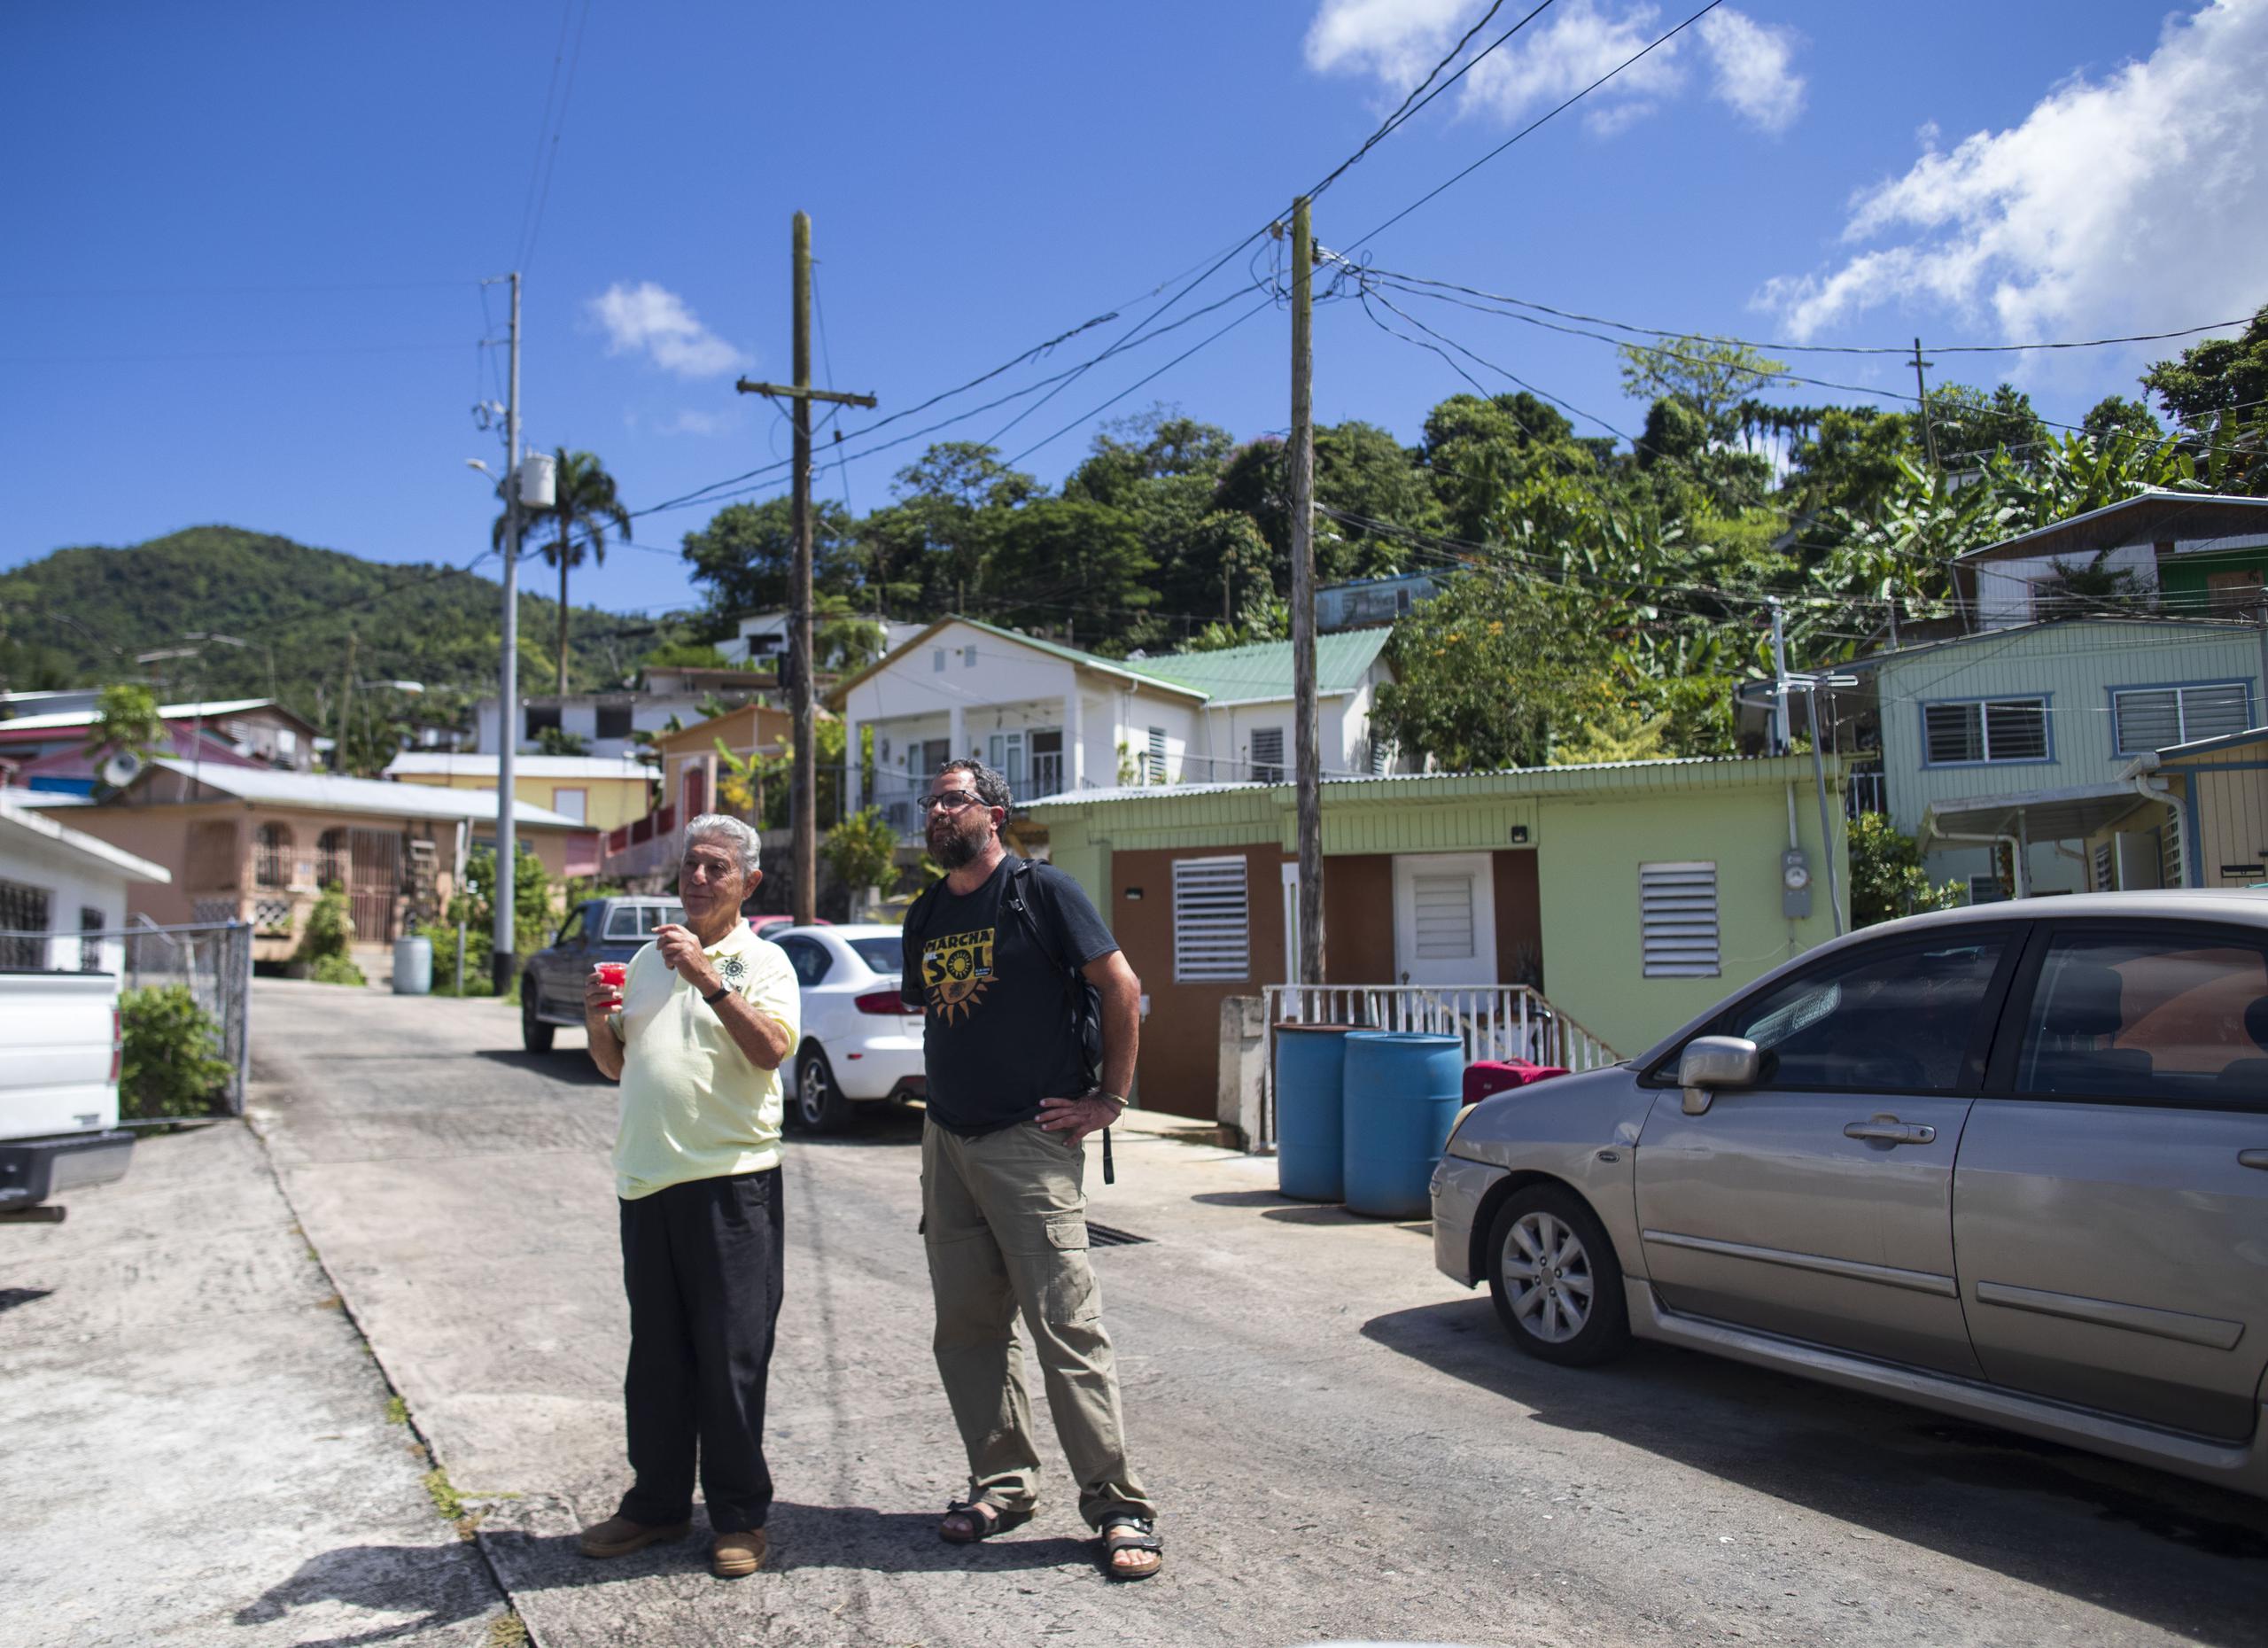 Alexis Massol, junto a su hijo, Alexis, expresó que lo que empezó como un "proyecto pretencioso" que empezó con cinco paneles en 1999 para "romper la dependencia económica" ahora tomó vida con la "insurrección energética" que la isla enfrenta desde el paso del huracán María.